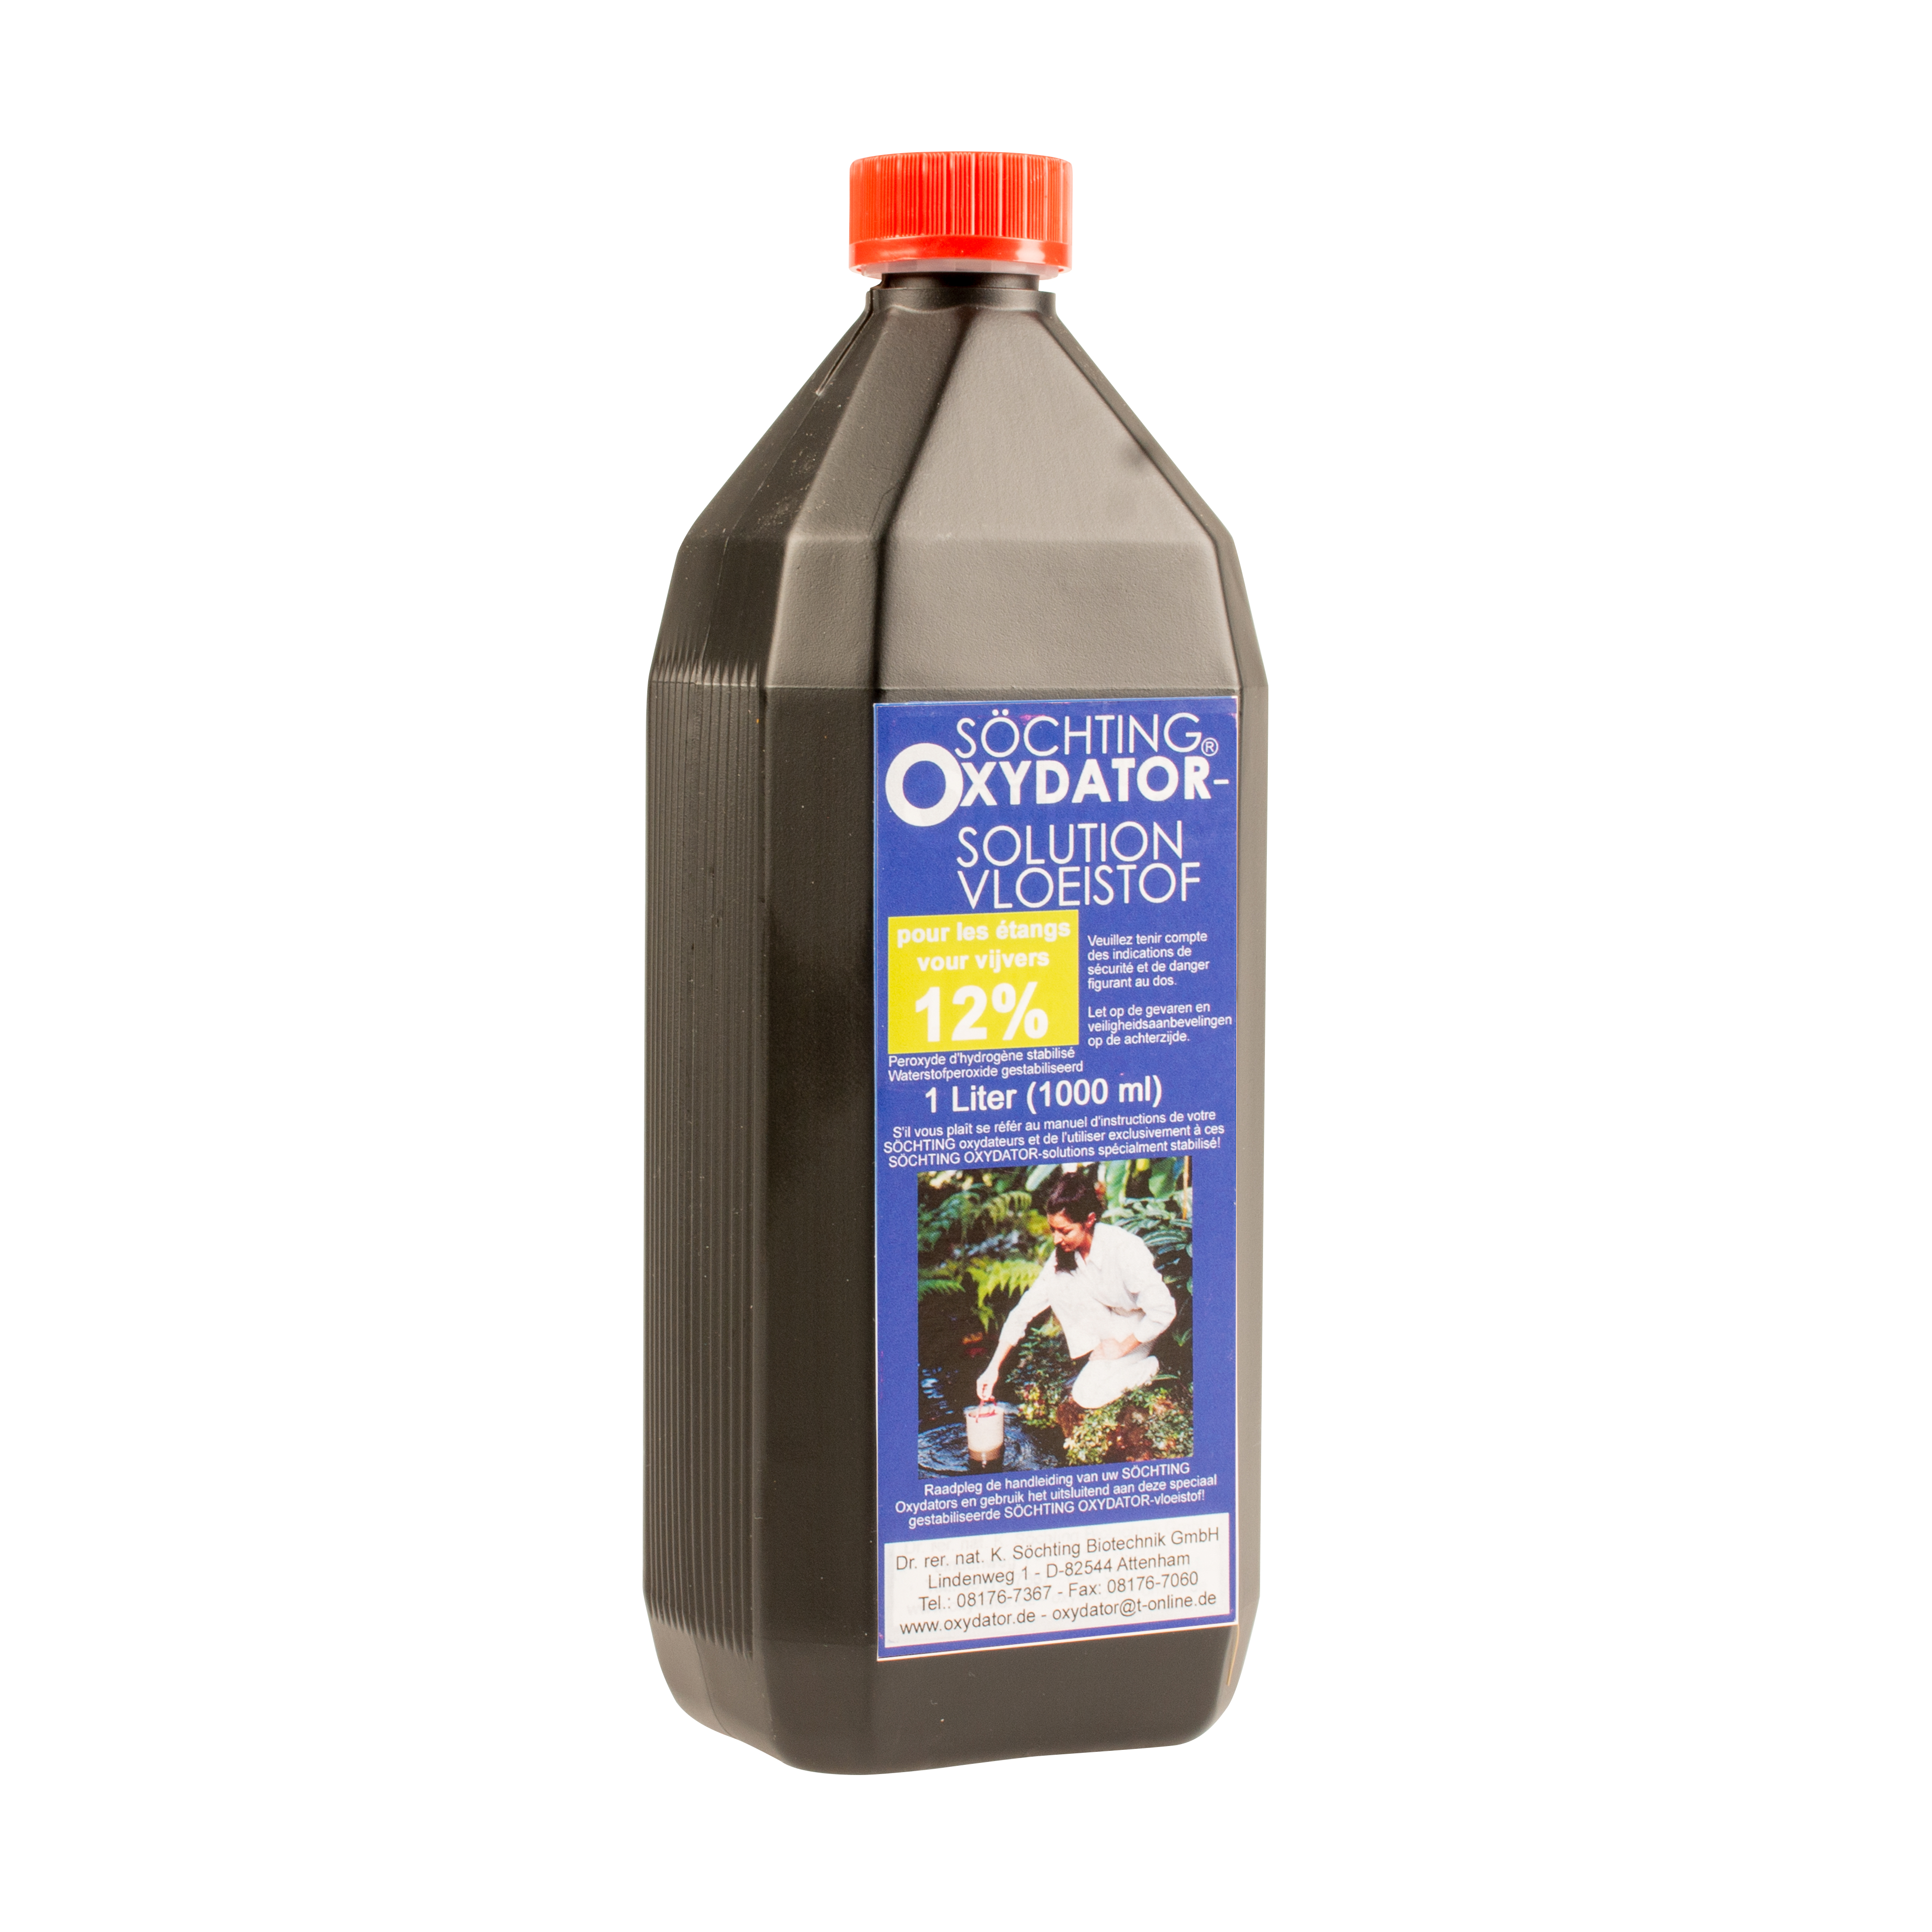 Oxydatorvloeistof 12% - Product shot